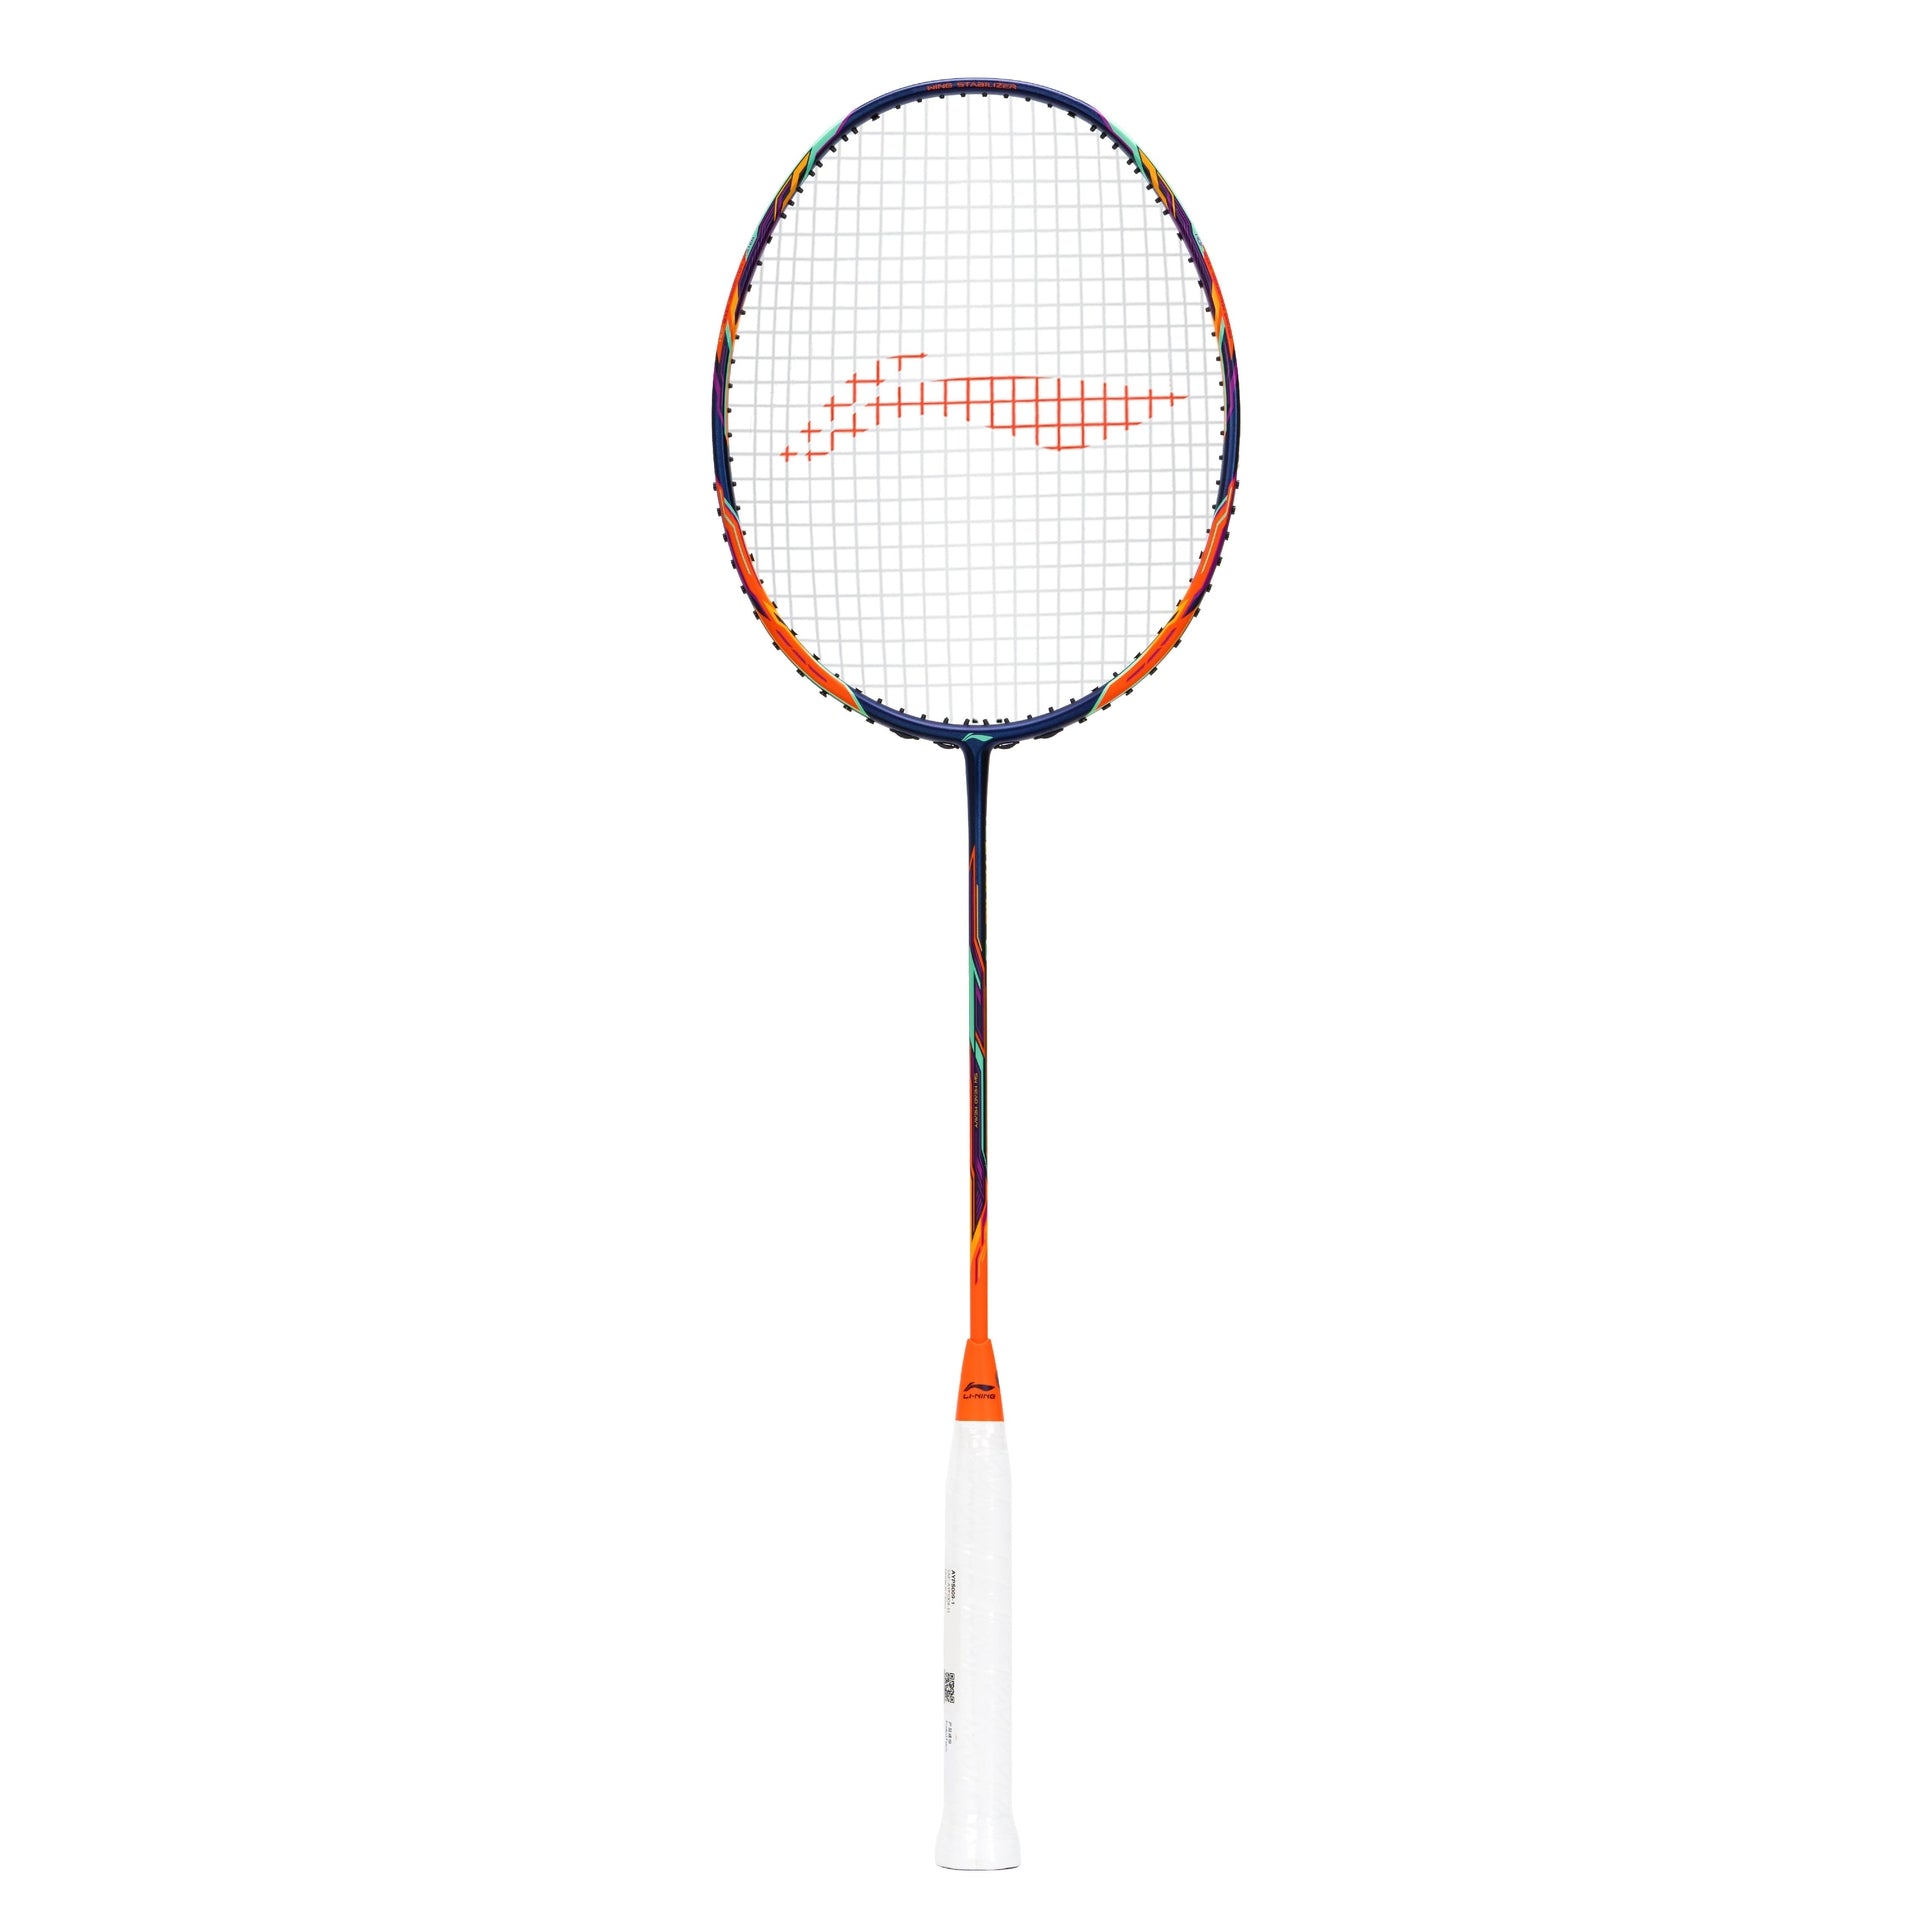 LI-NING TECTONIC 6 5U Badminton Racket